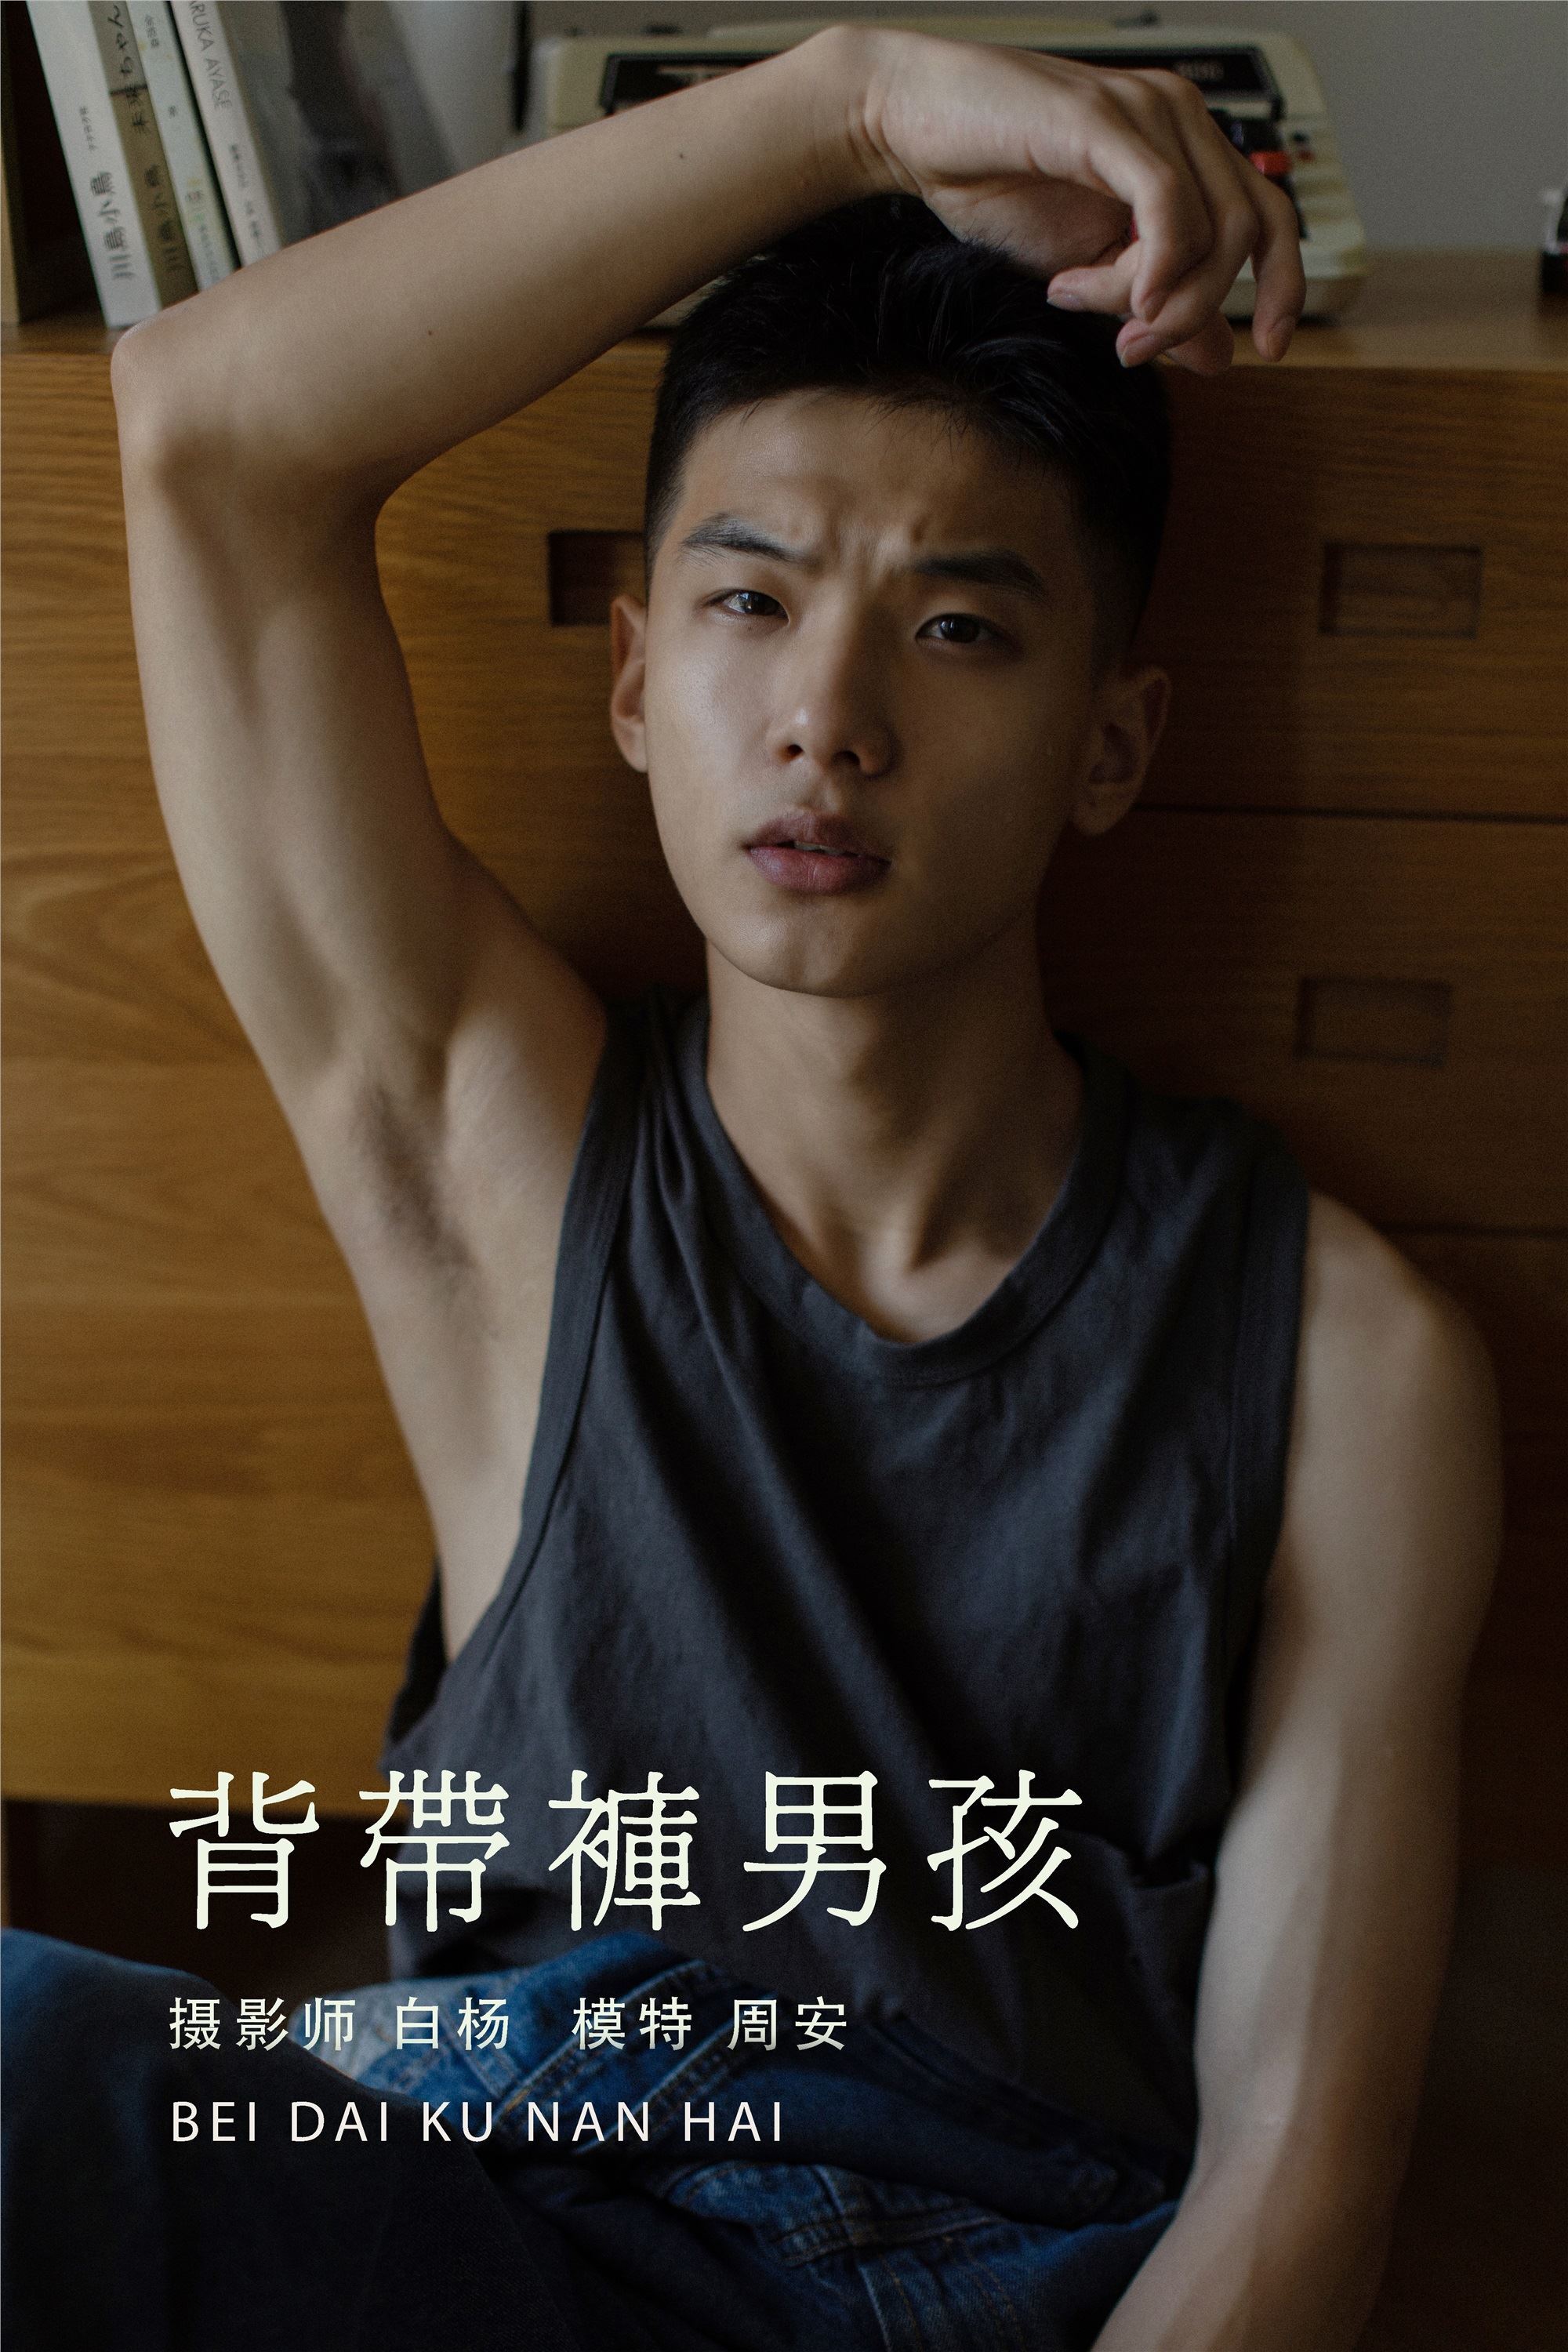 YITUYU art picture language 2021.08.21 suspenders boy Zhou An